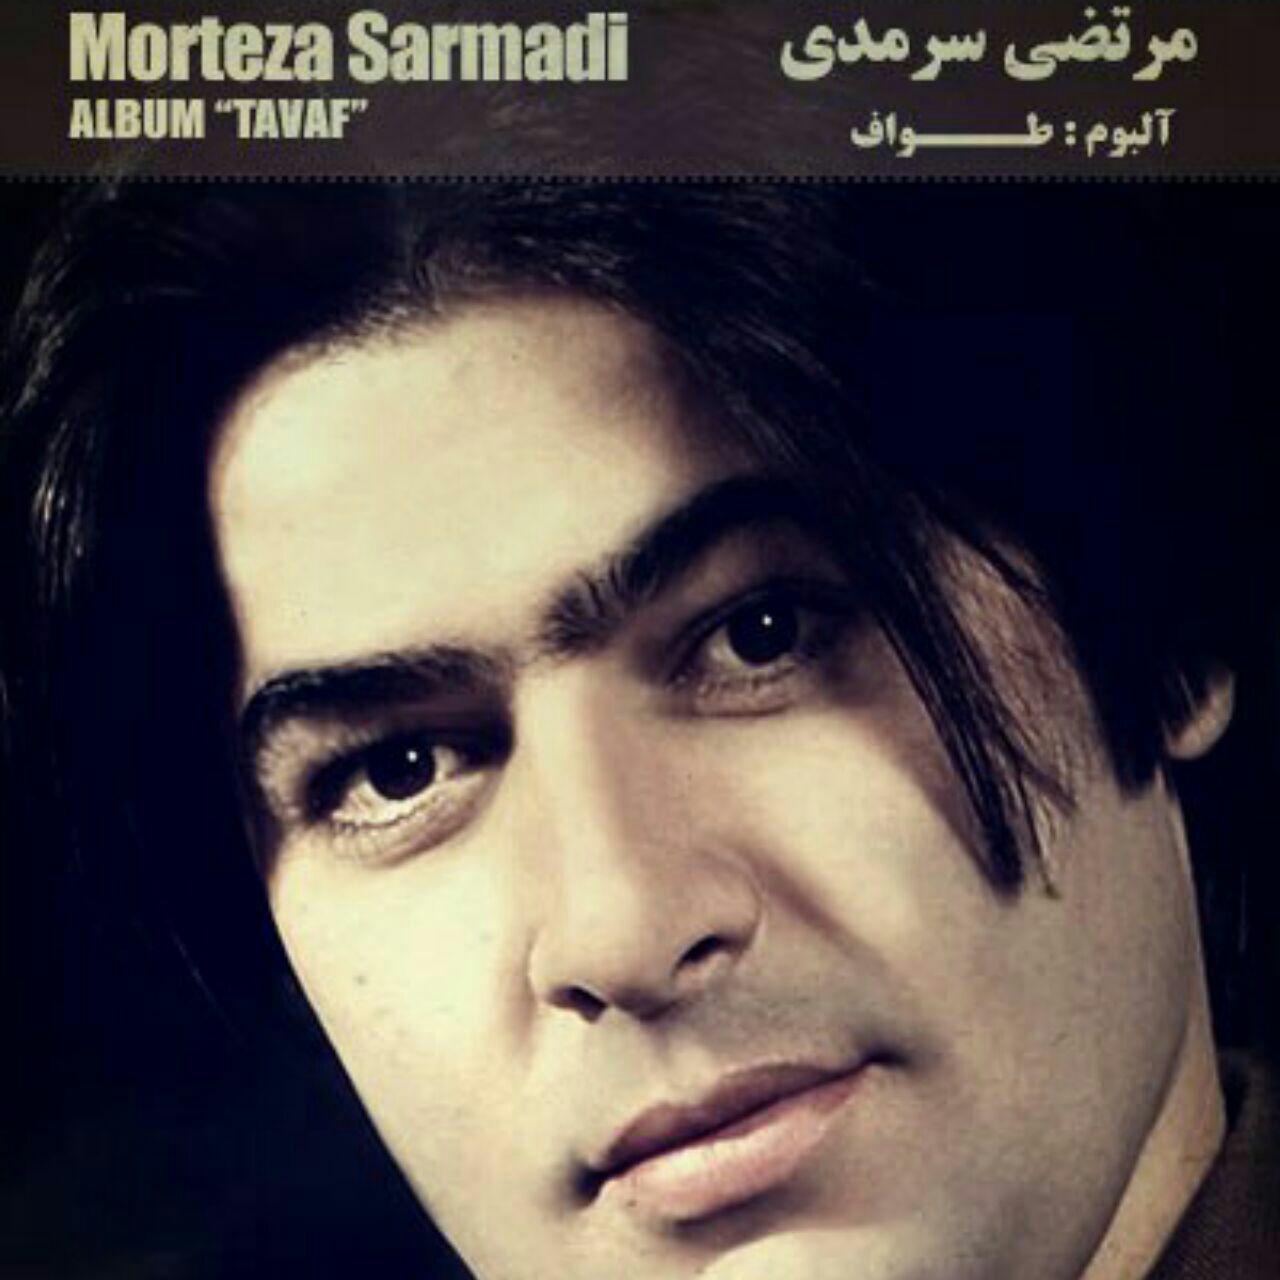  دانلود آهنگ جدید مرتضی سرمدی - دیوونگی کردم | Download New Music By Morteza Sarmadi - Divonegi Kardam